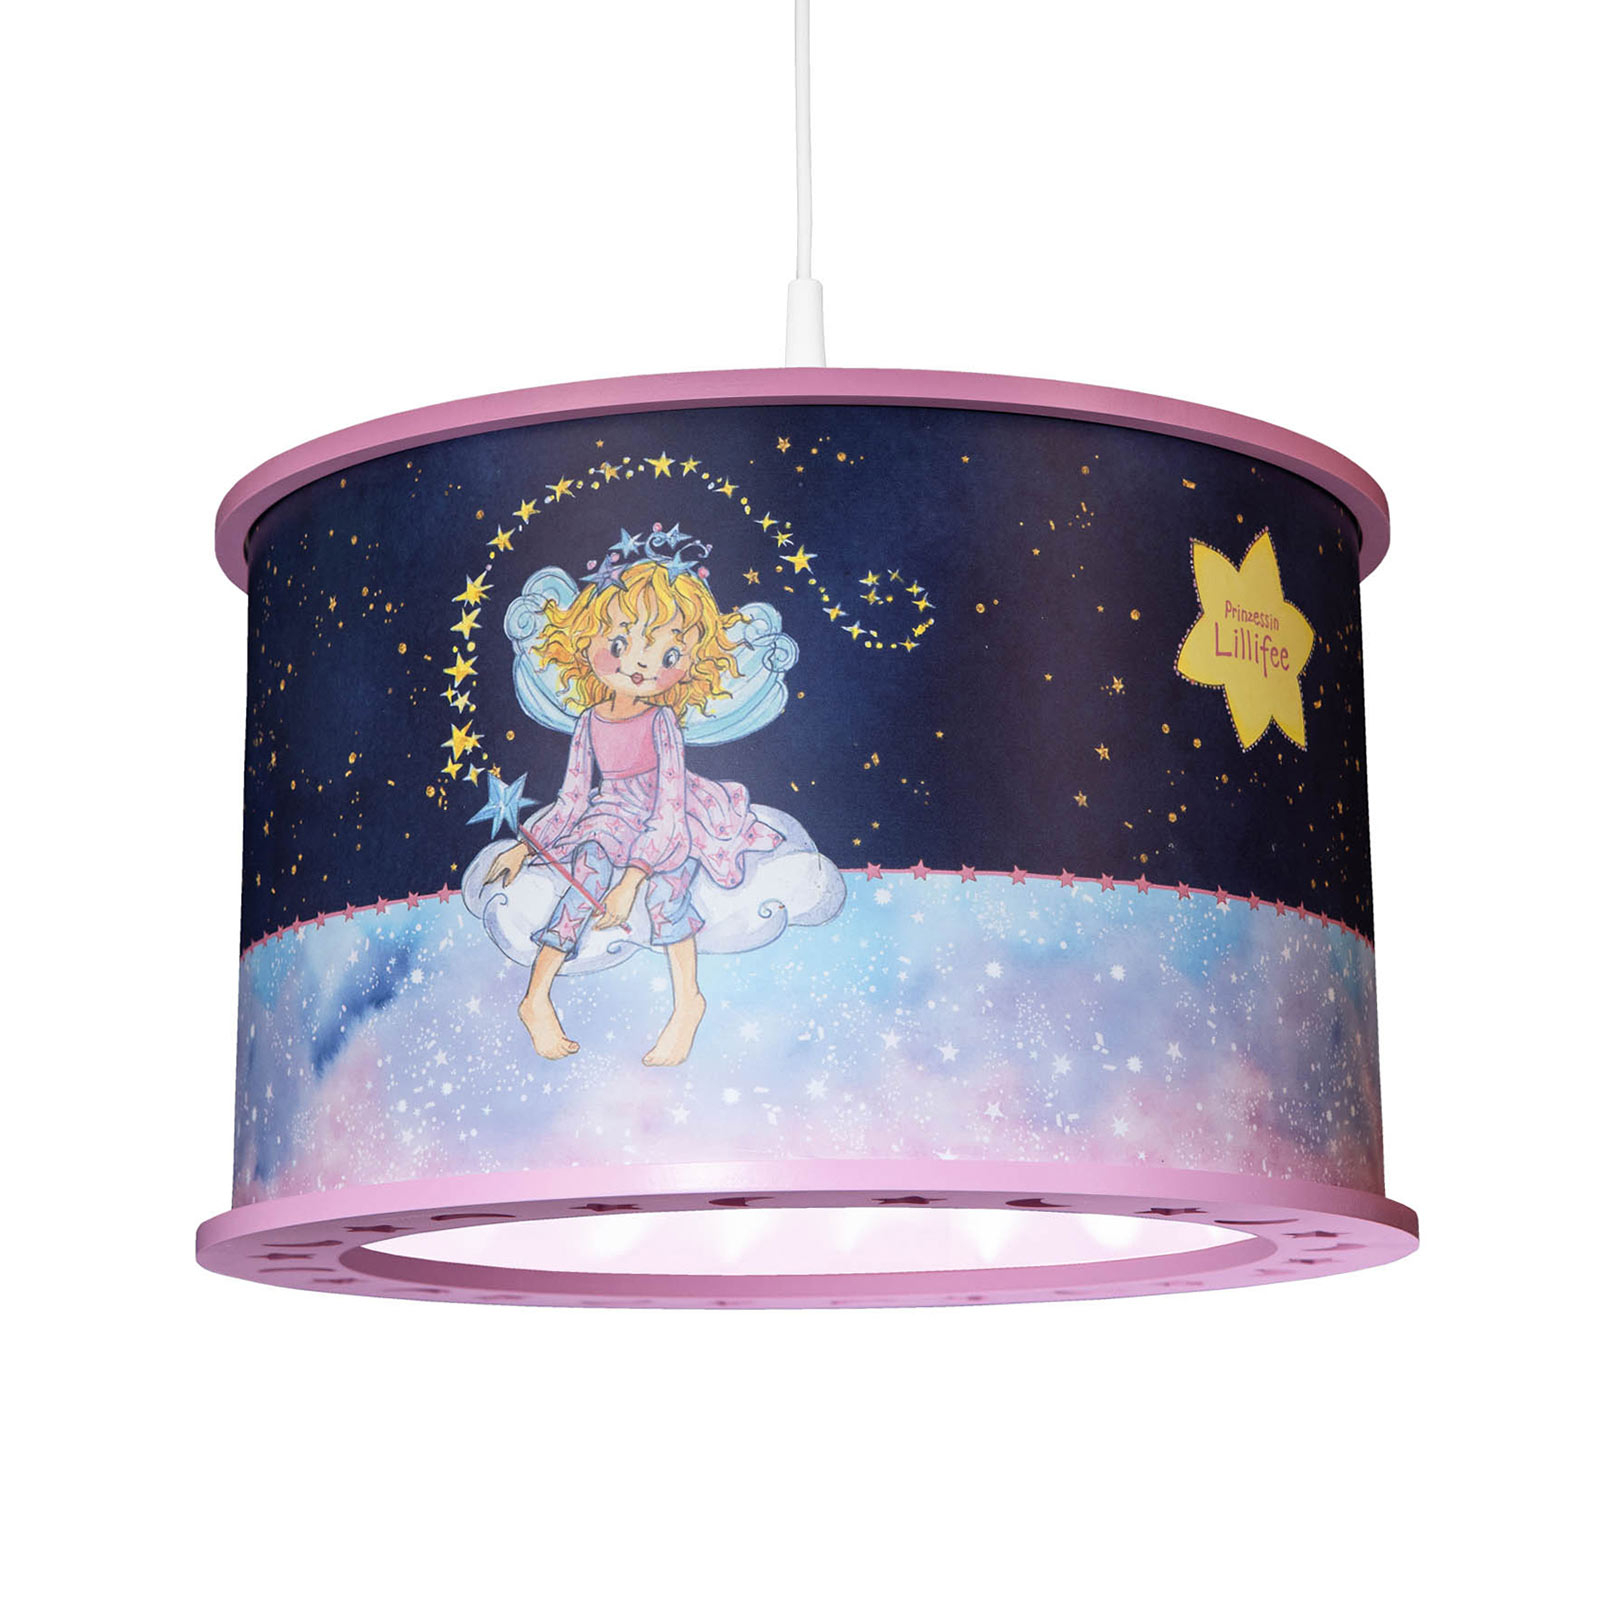 Висяща лампа Princess Lillifee, звездна магия